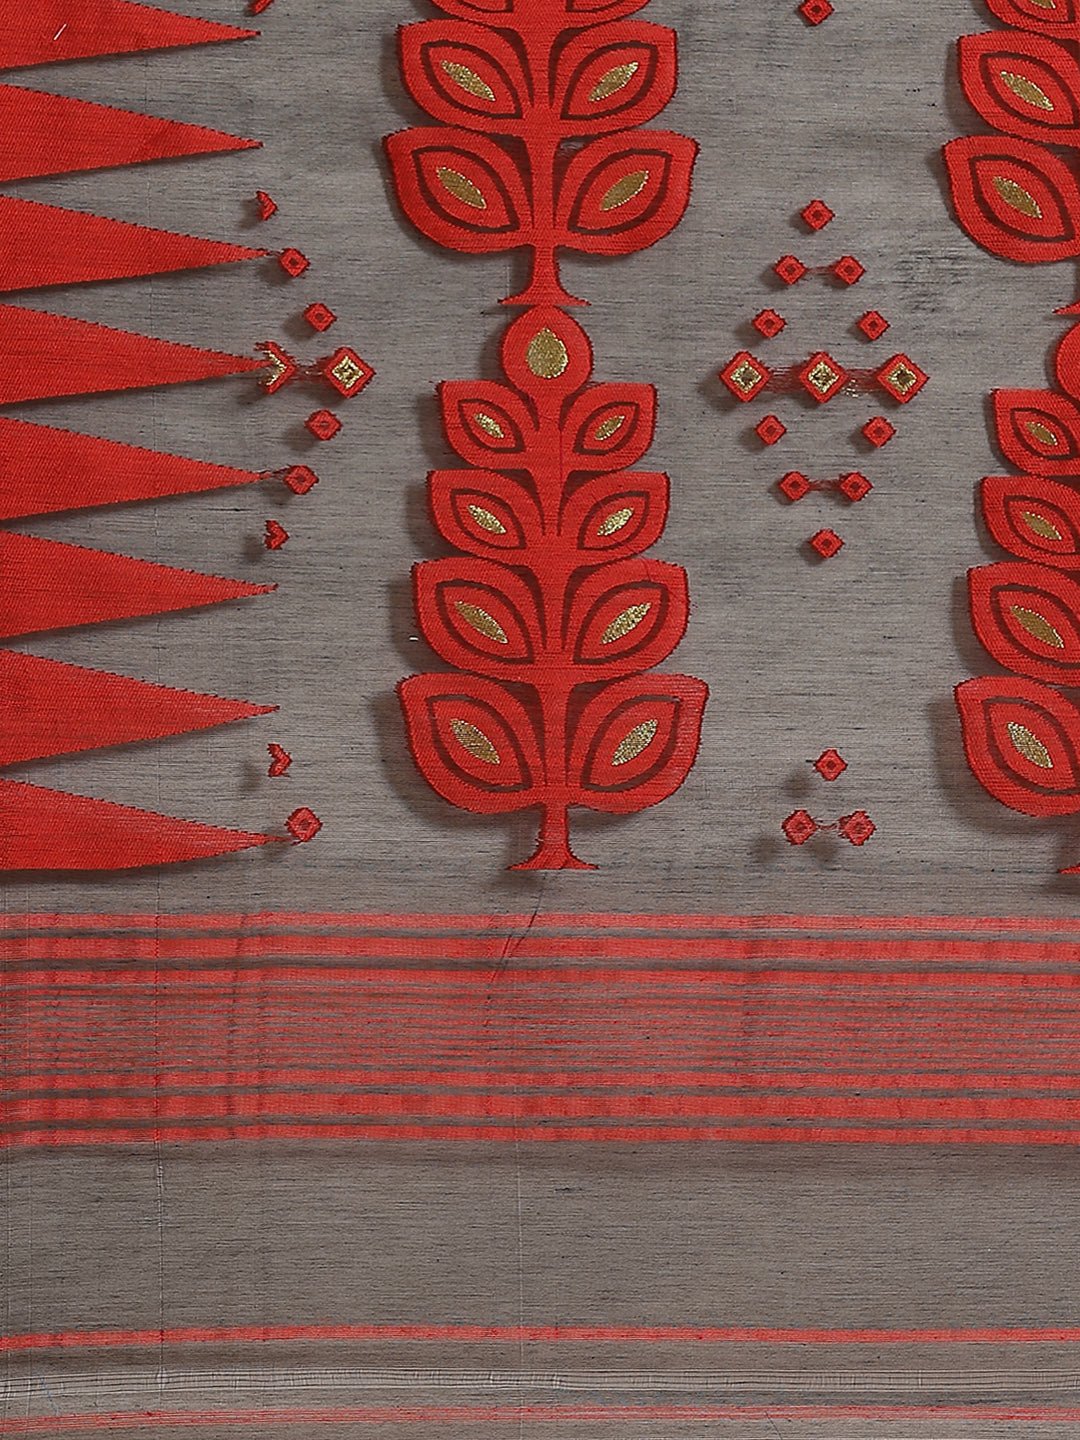 Black and Red, Kalakari India Jamdani Silk Cotton Woven Design Saree without blouse CHBHSA0012 - Kalakari India